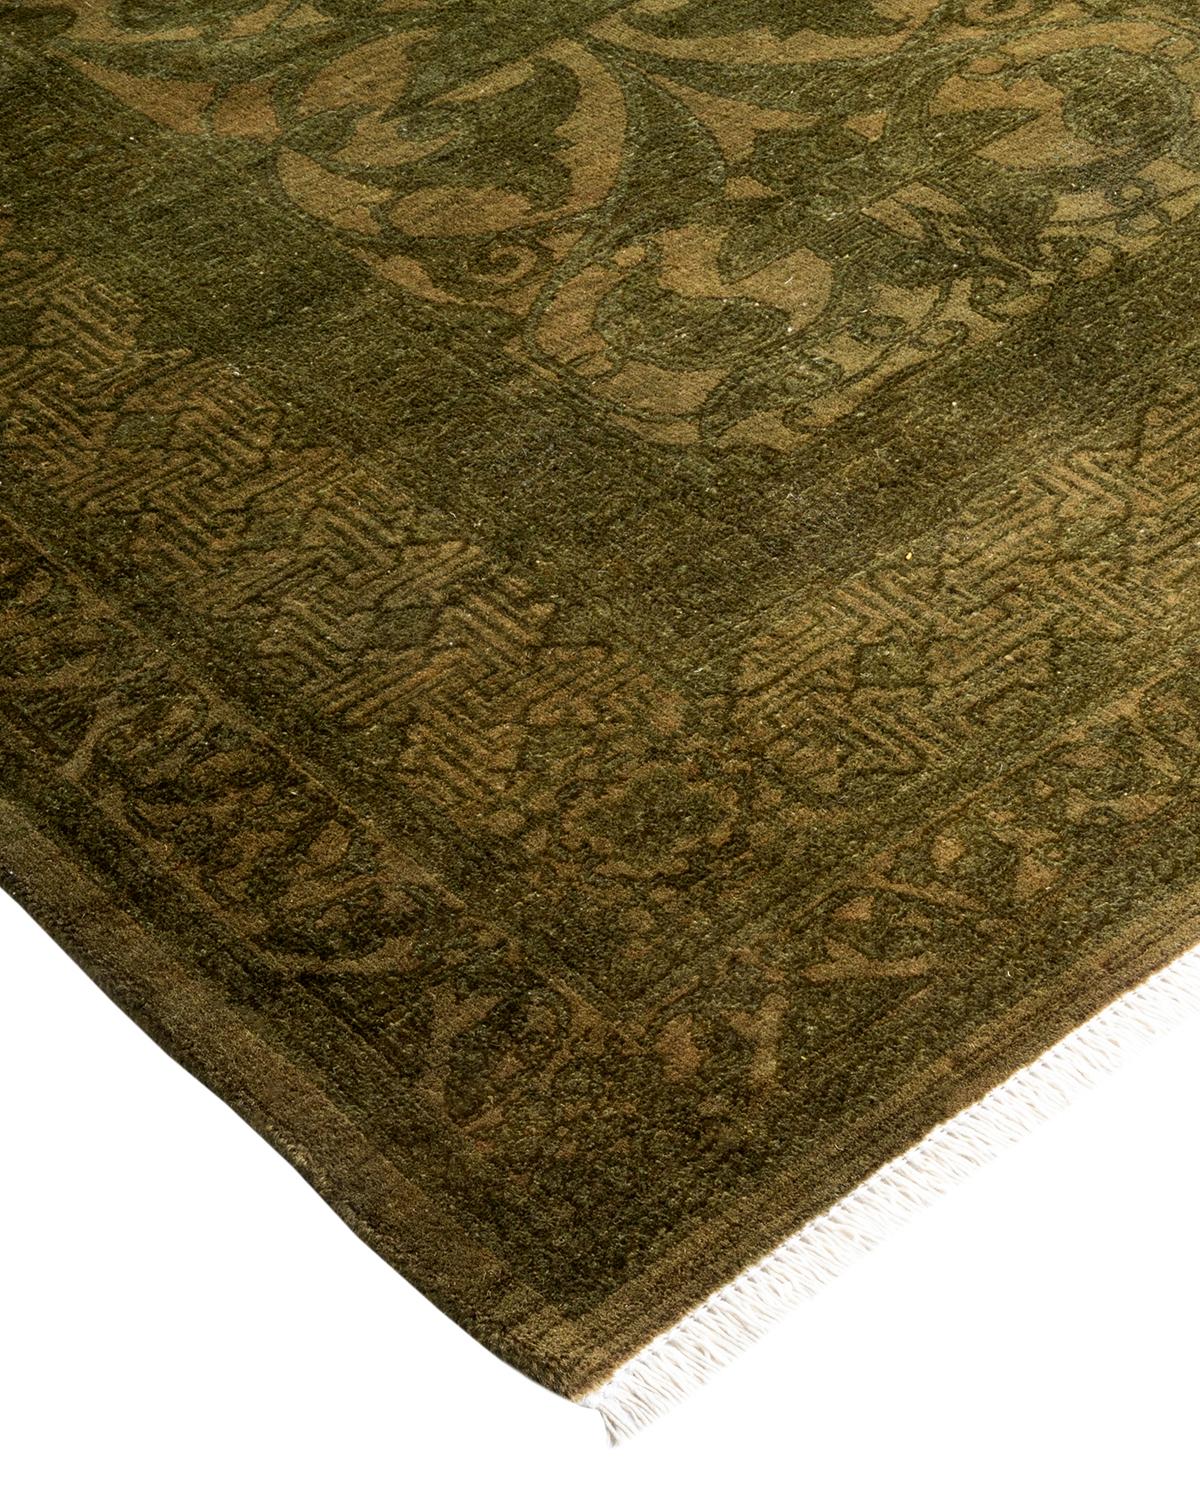 Vibrance-Teppiche sind der Inbegriff von Klassik mit Pfiff: traditionelle Muster in leuchtenden Farben gefärbt. Jeder handgeknüpfte Teppich wird mit einem 100% natürlichen botanischen Farbstoff gewaschen, der verborgene Nuancen in den Mustern